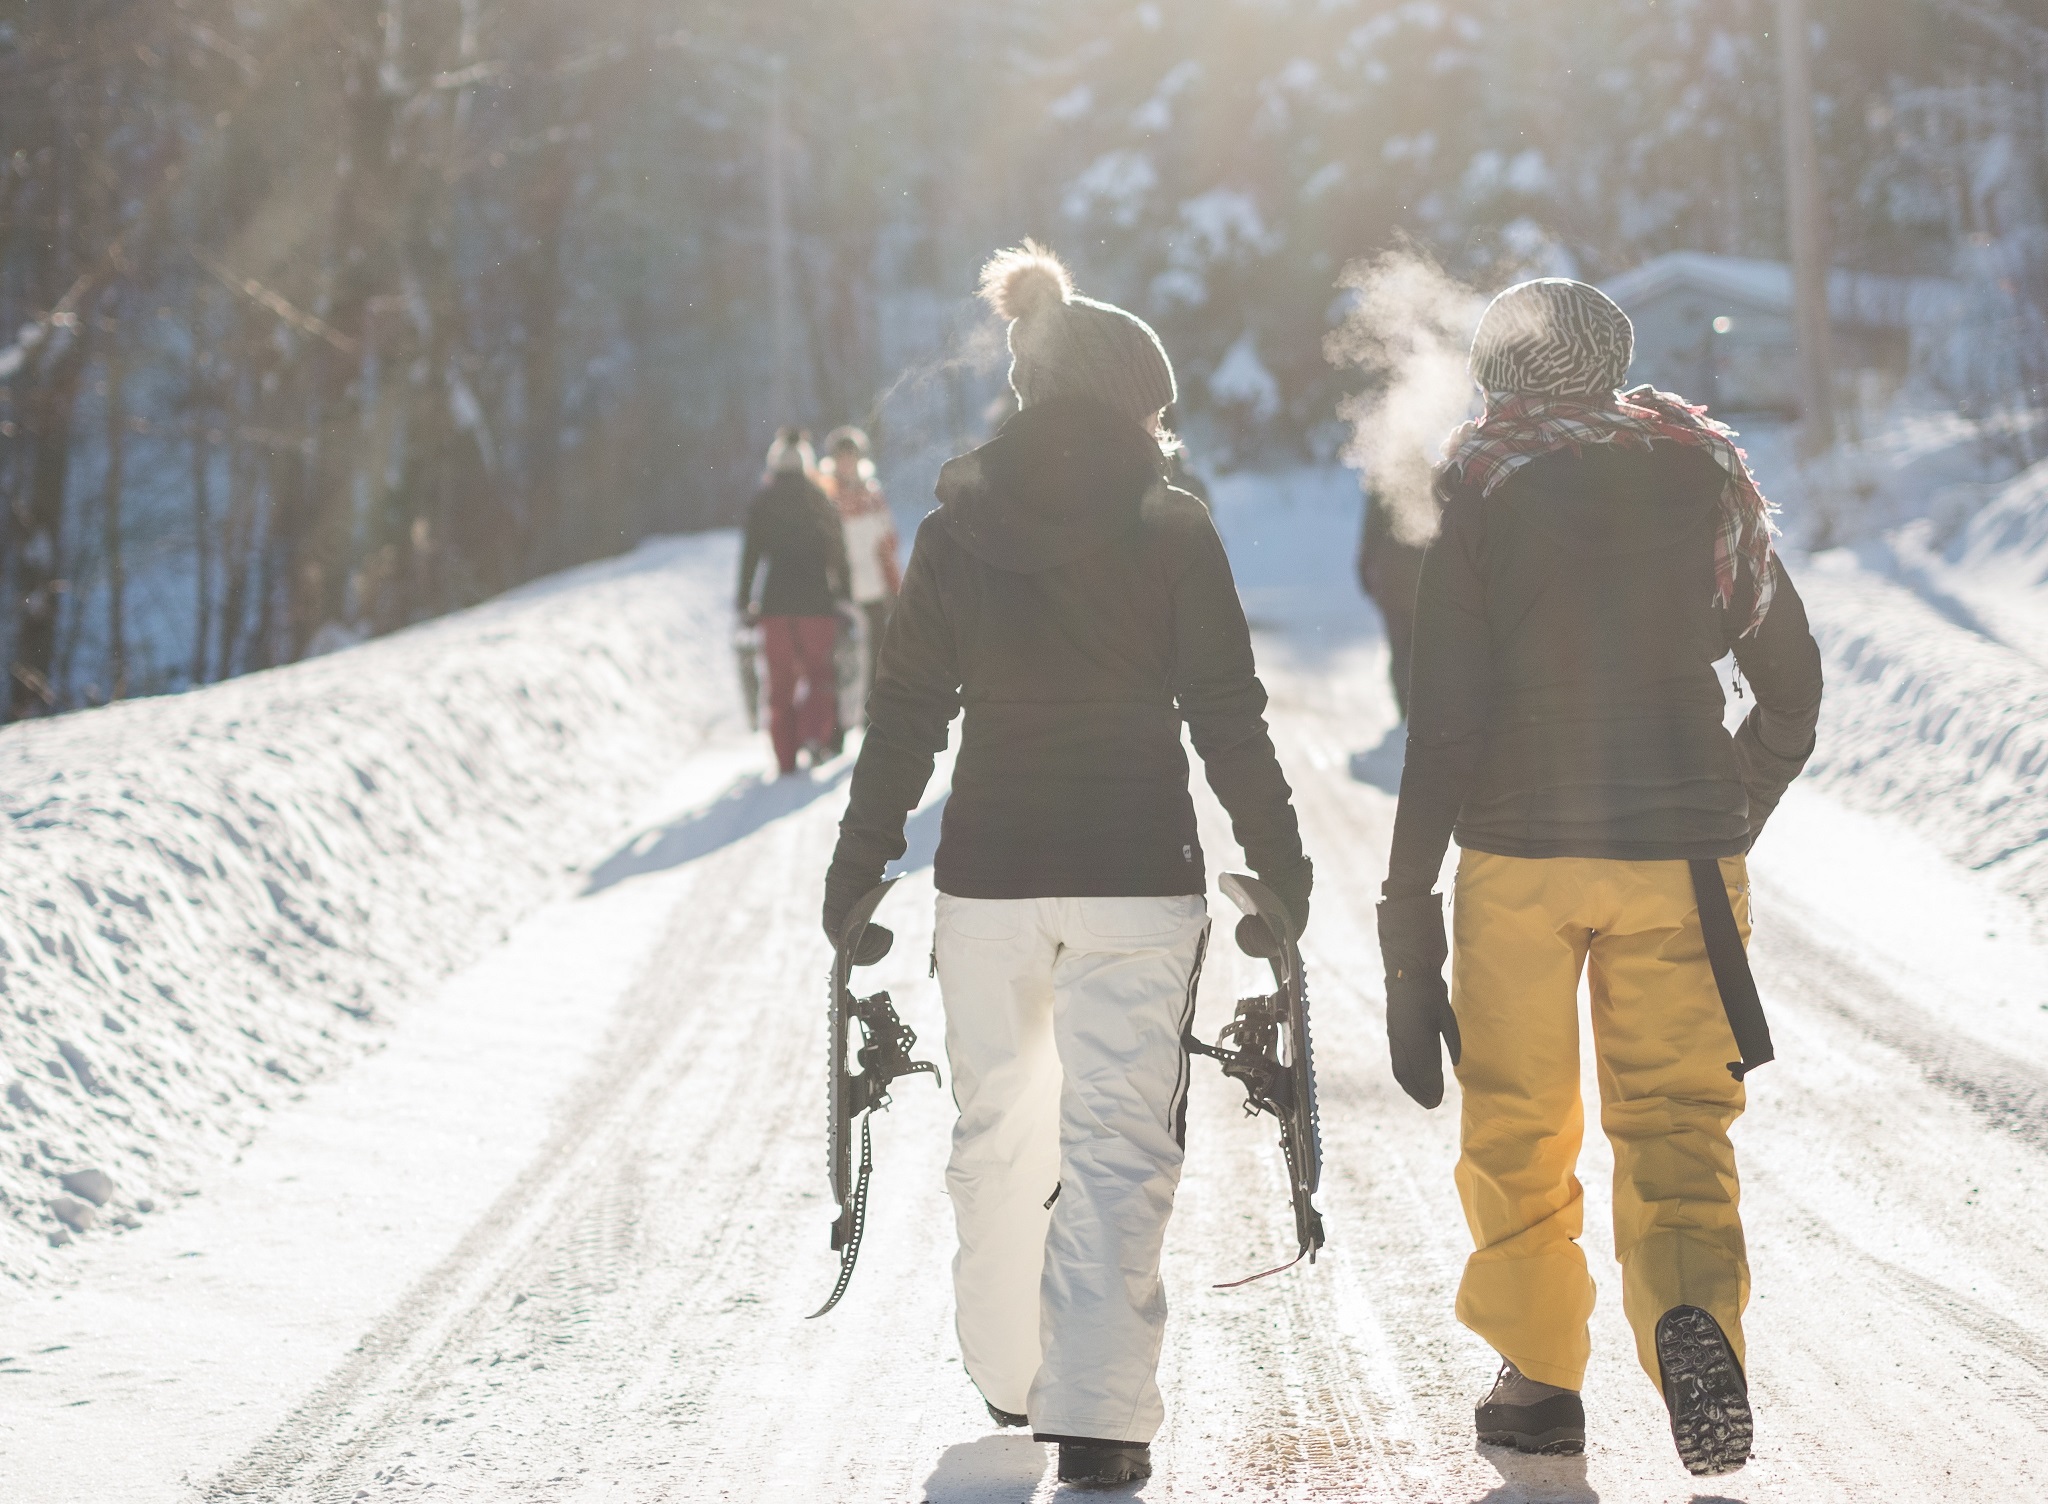 Svenska folkets fem-i-topp på skidsemestern